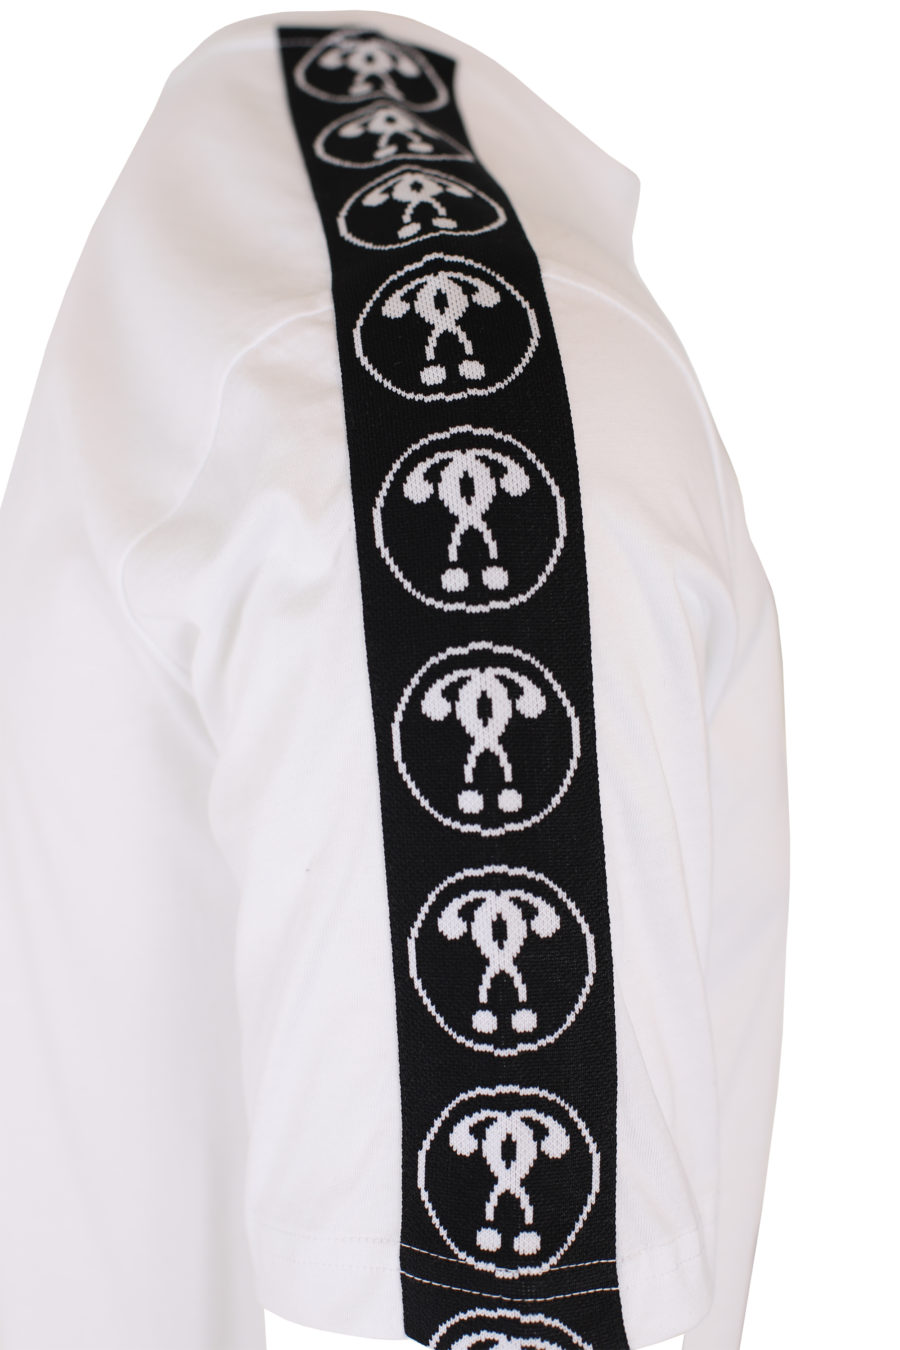 Camiseta blanca con logo doble pregunta pequeño y cinta en mangas - IMG 9331